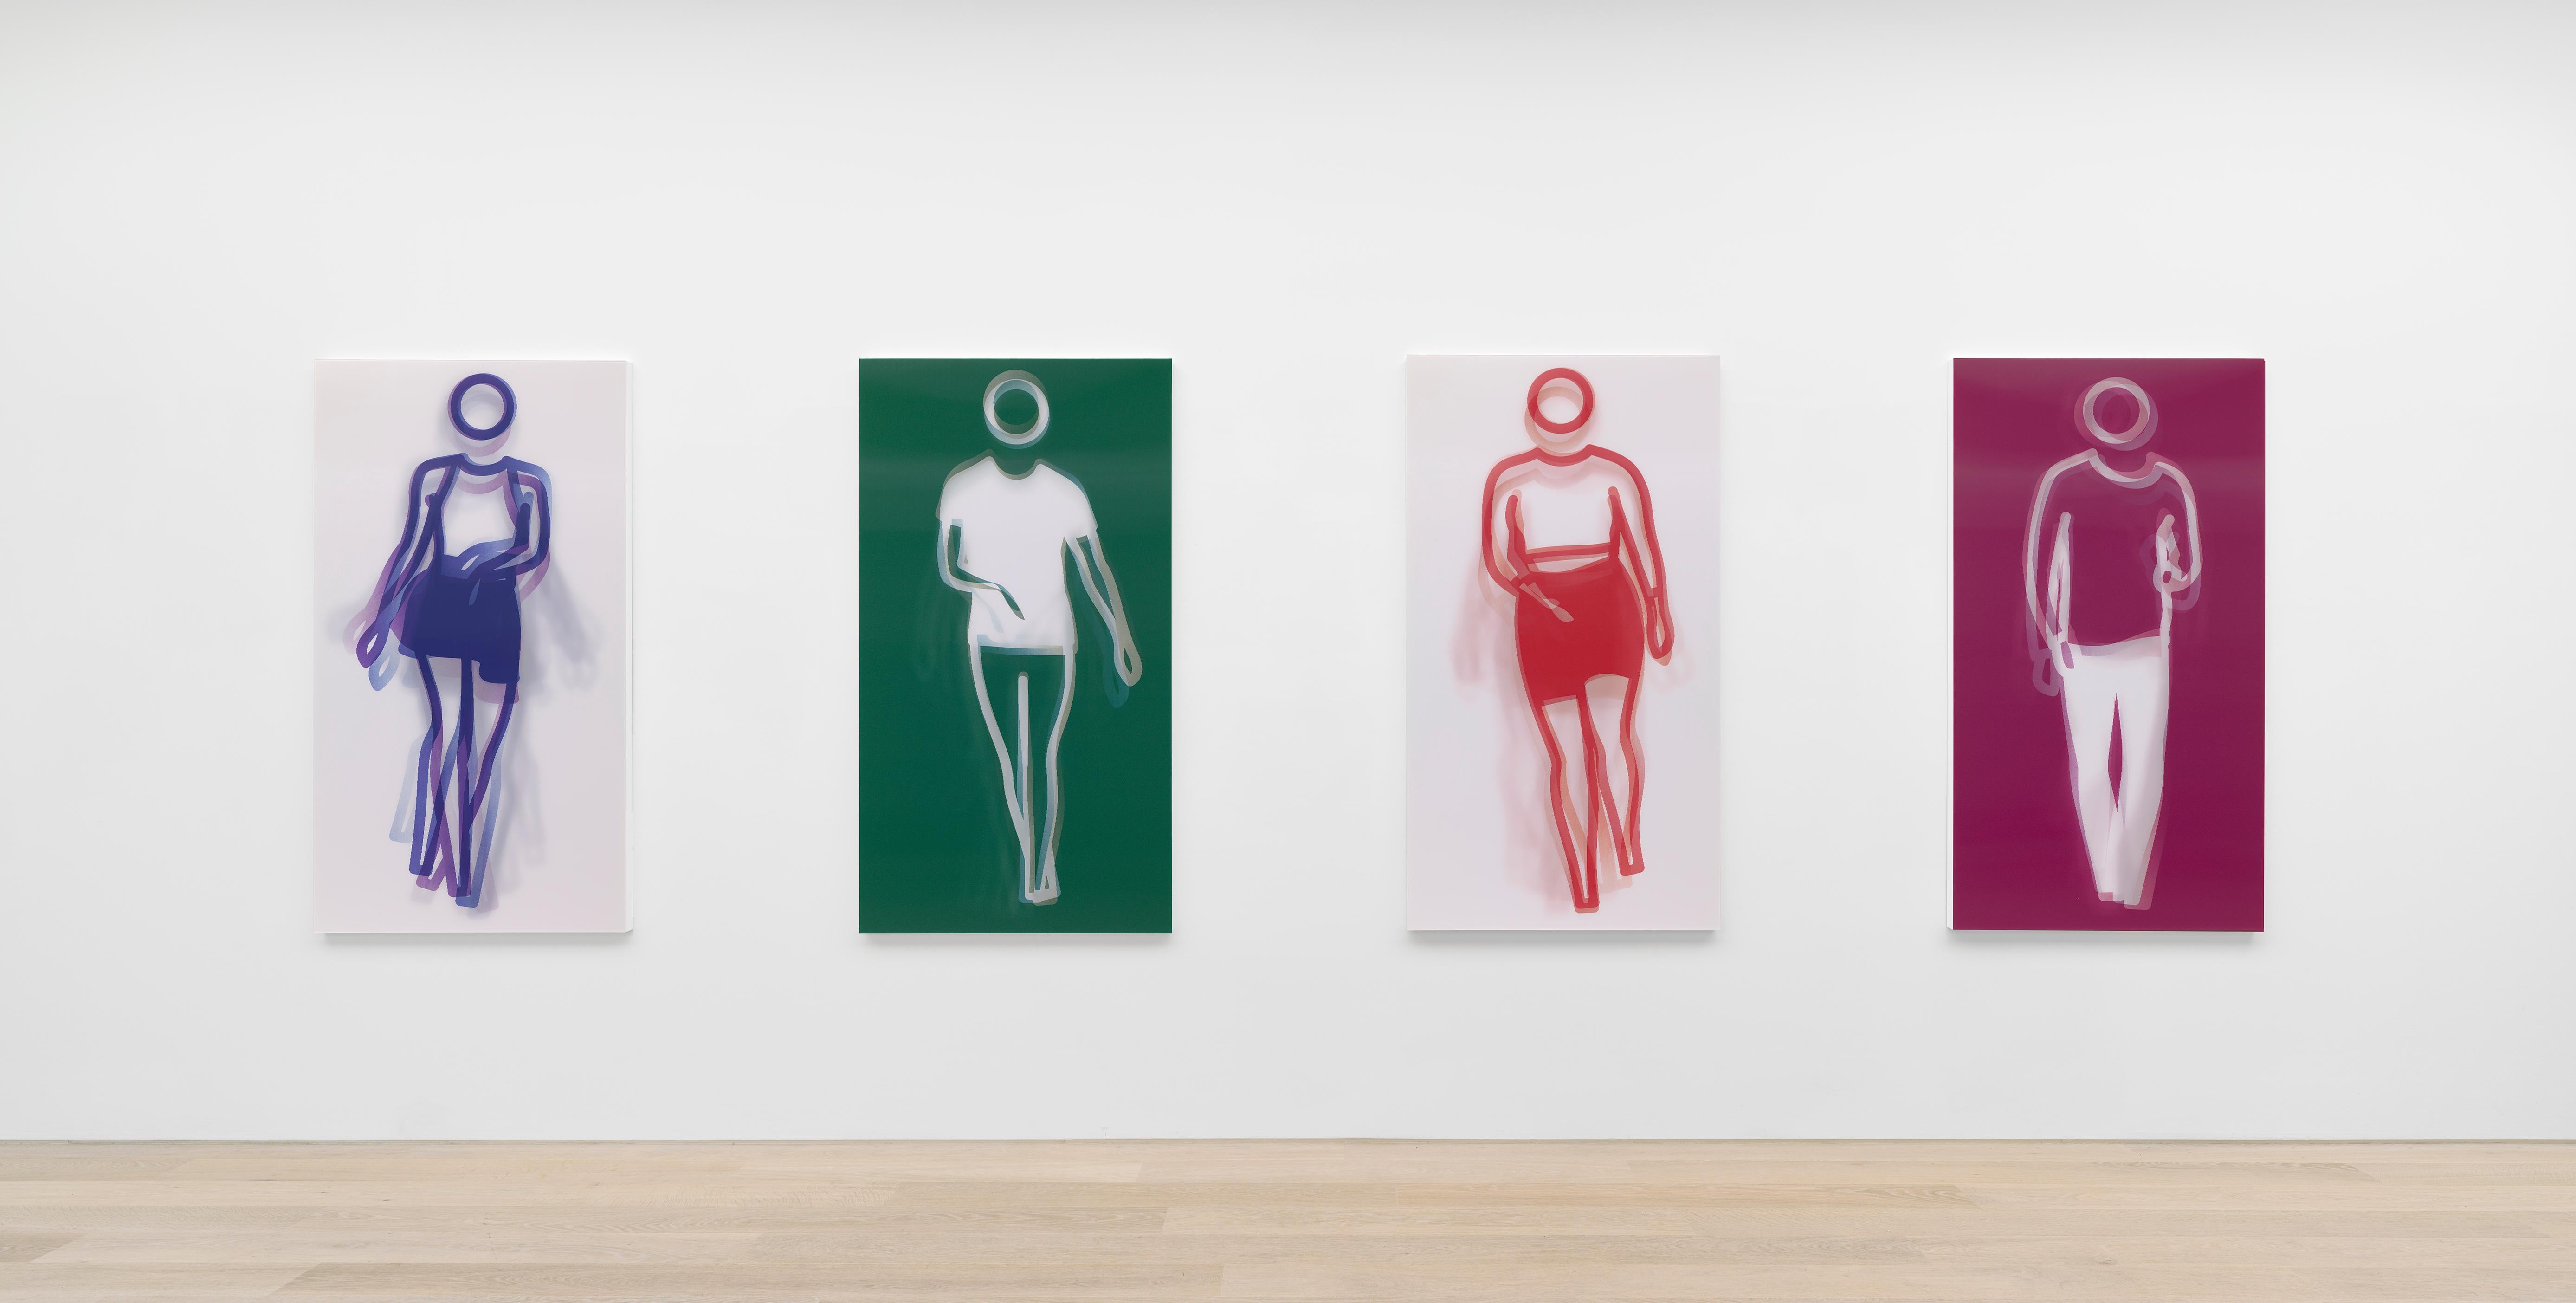 Moving Large Contemporary Acrylic Panel of Dancing Figure, Four Colors, Dance 1 (panneau acrylique contemporain de grande taille représentant une figure dansante)  - Pop Art Print par Julian Opie